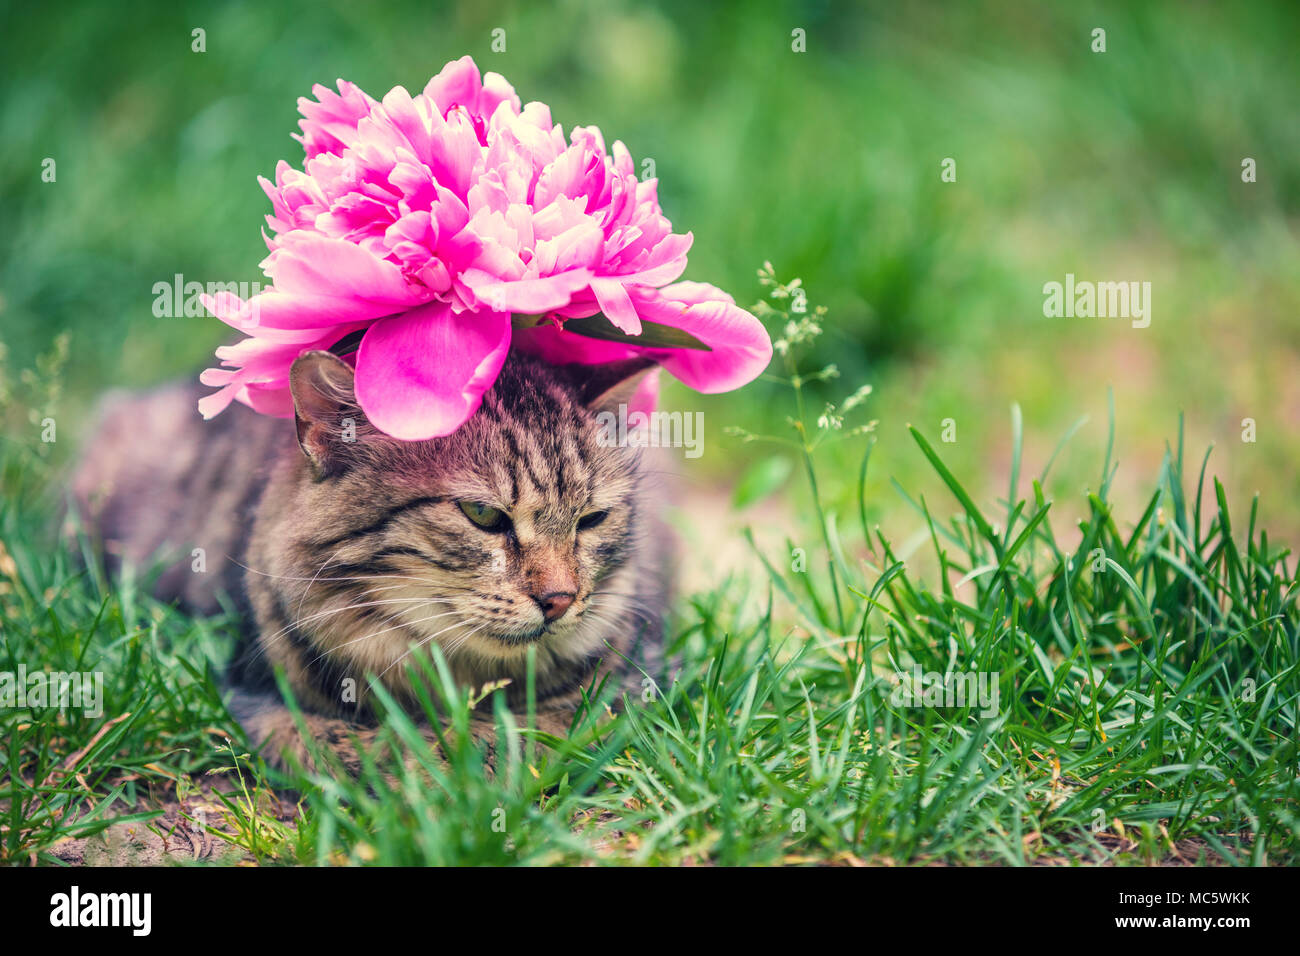 Portrait D Un Chat Avec Une Pivoine Fleur Sur Sa Tete Allonge Dans L Herbe Dans Le Jardin En Ete Photo Stock Alamy